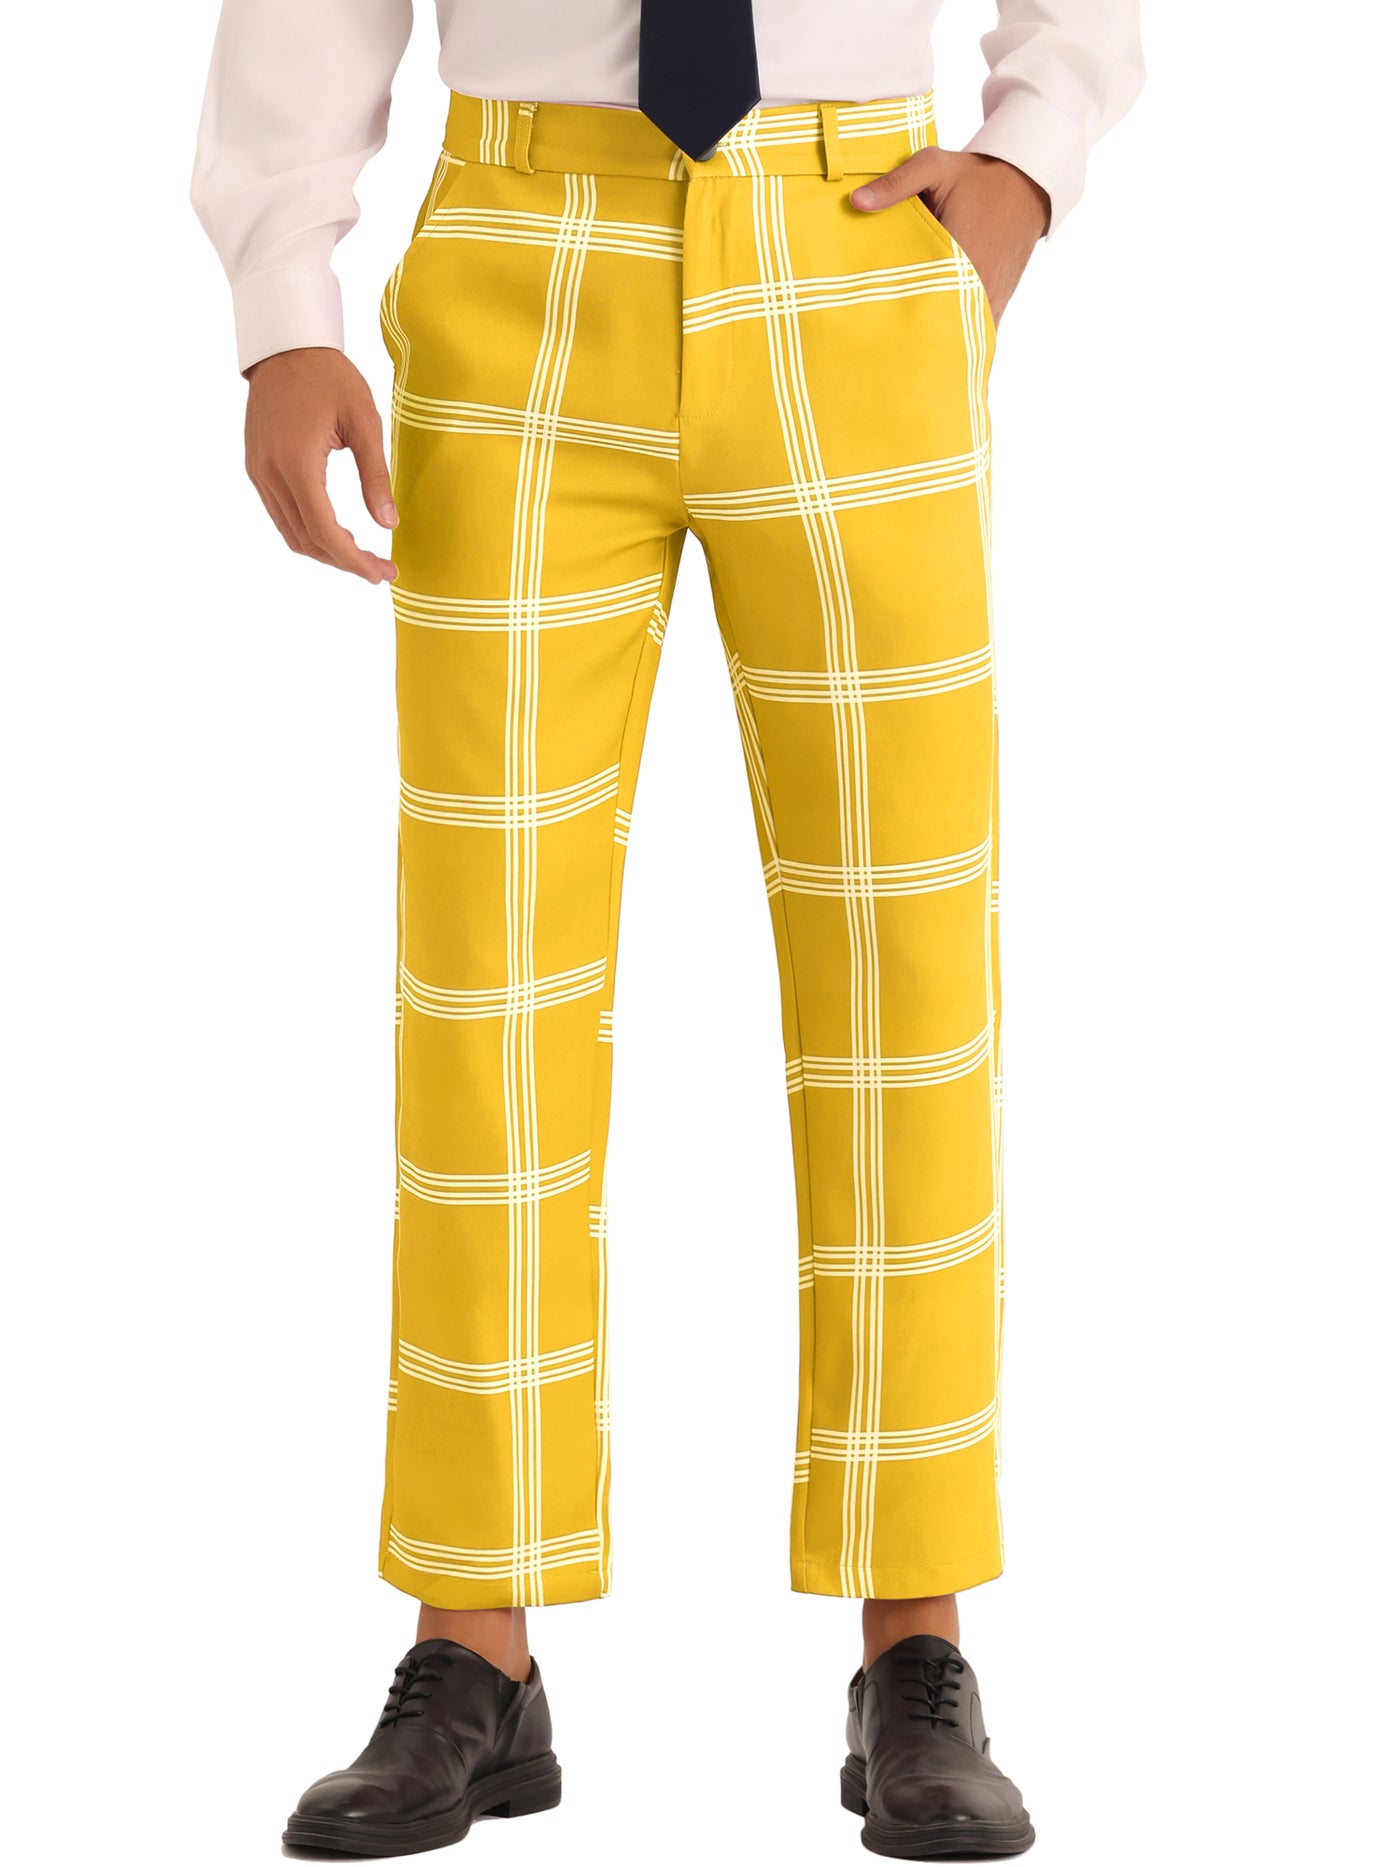 Bublédon Plaid Trousers for Men's Color Block Slim Fit Flat Front Checked Dress Pants